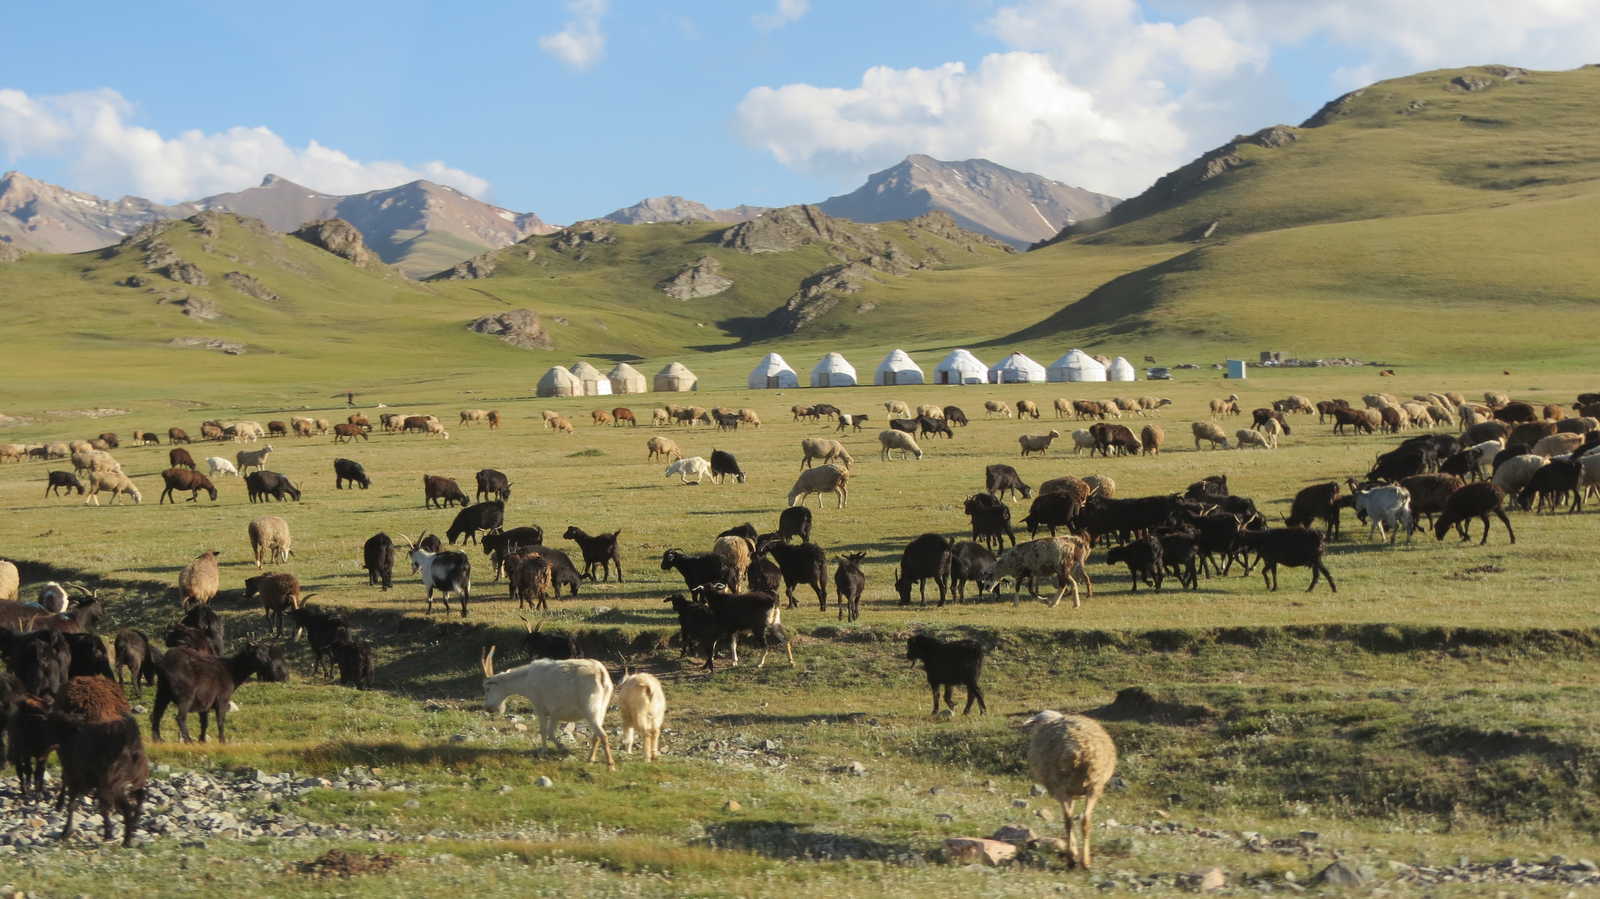 Image Route de la soie et randonnées nomades